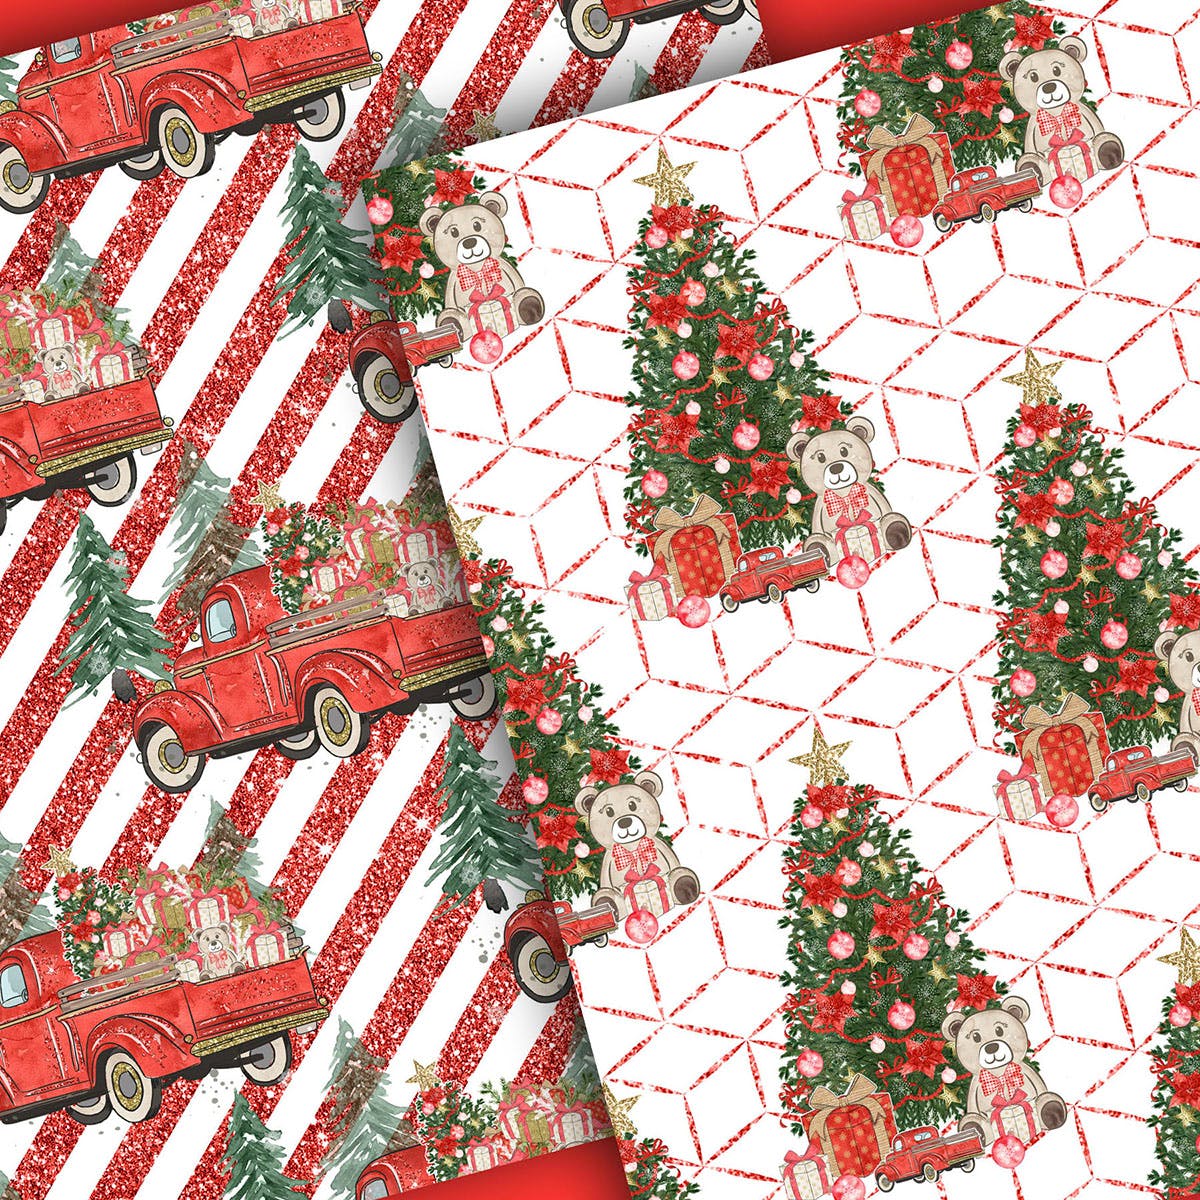 圣诞节礼物卡车手绘图案数码纸张背景素材 Christmas Car digital paper pack插图(5)